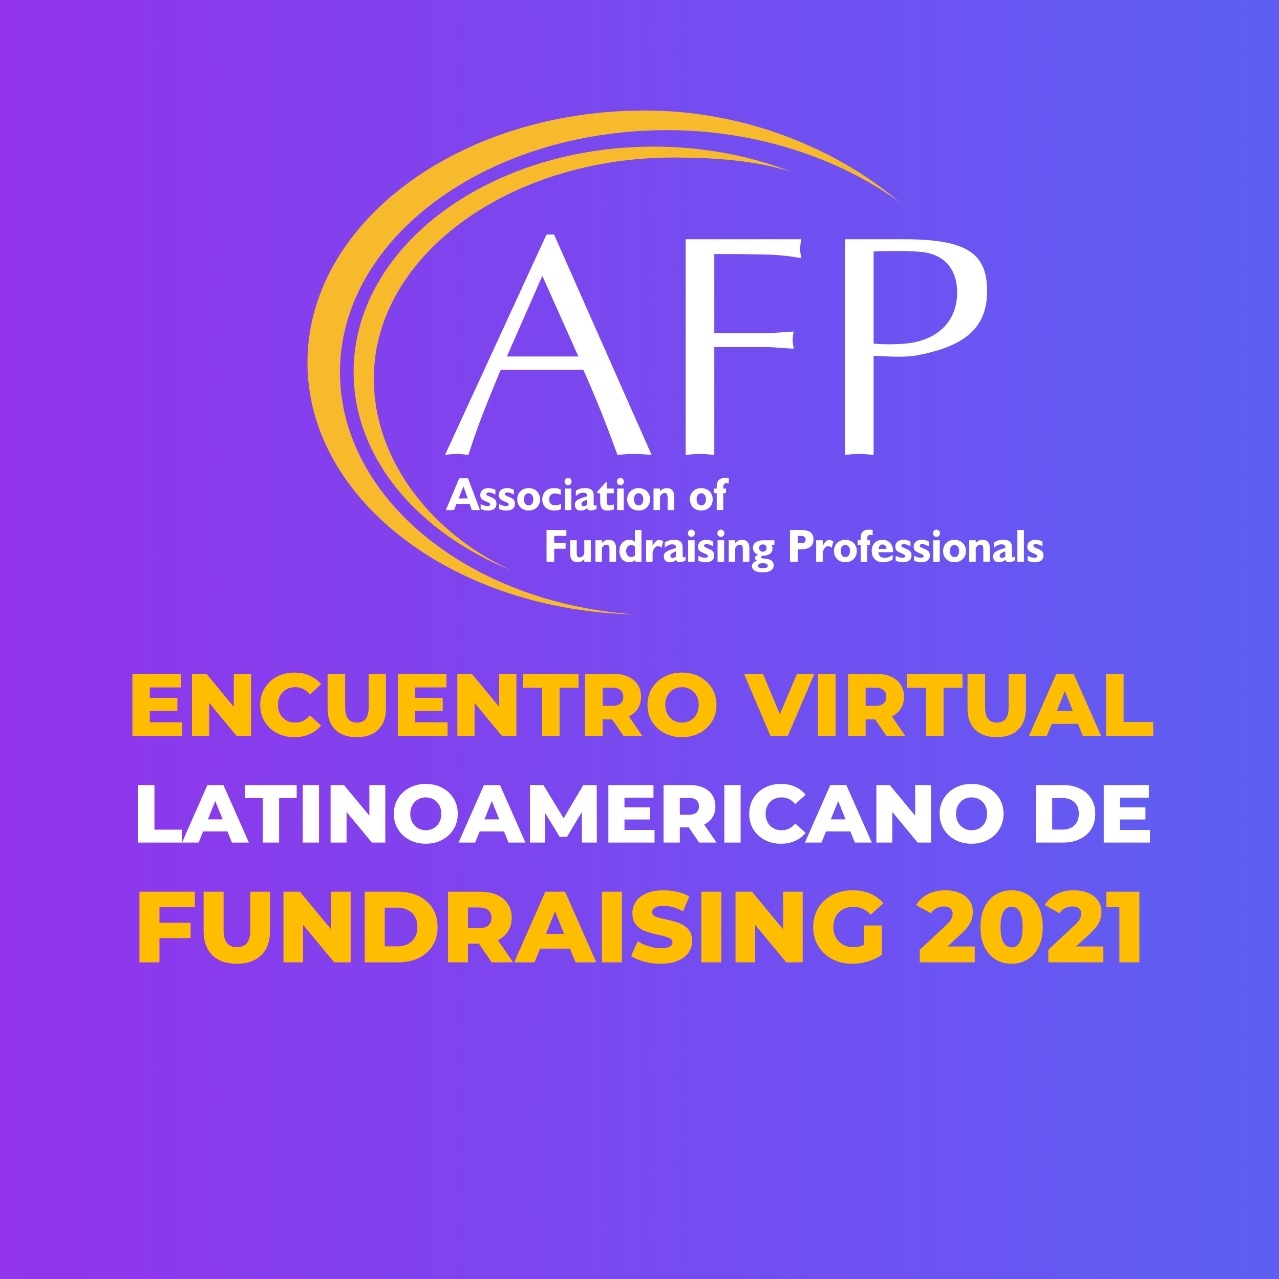 Camino al Encuentro Virtual Latinoamericano de Fundraising 2021: “Construyamos comunidades filantrópicas”